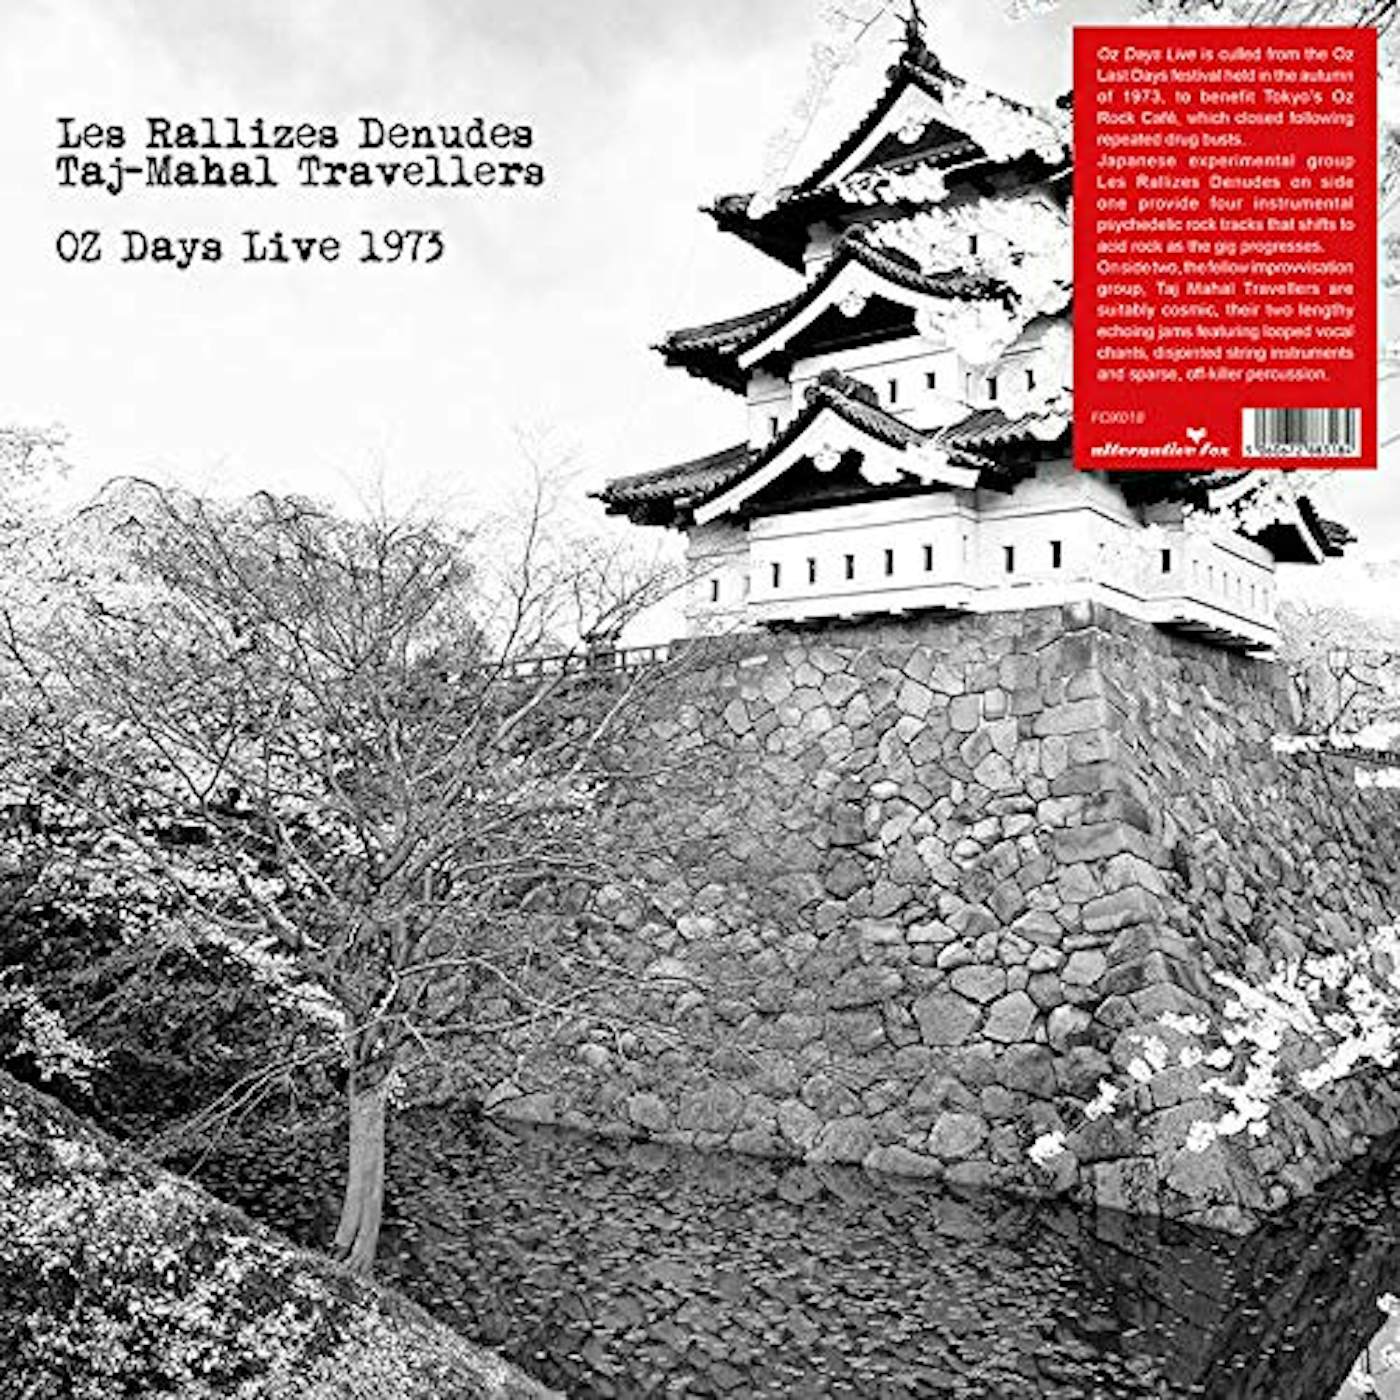 Les Rallizes Dénudés & taj mahal travellers-oz days live 1973 Vinyl Record